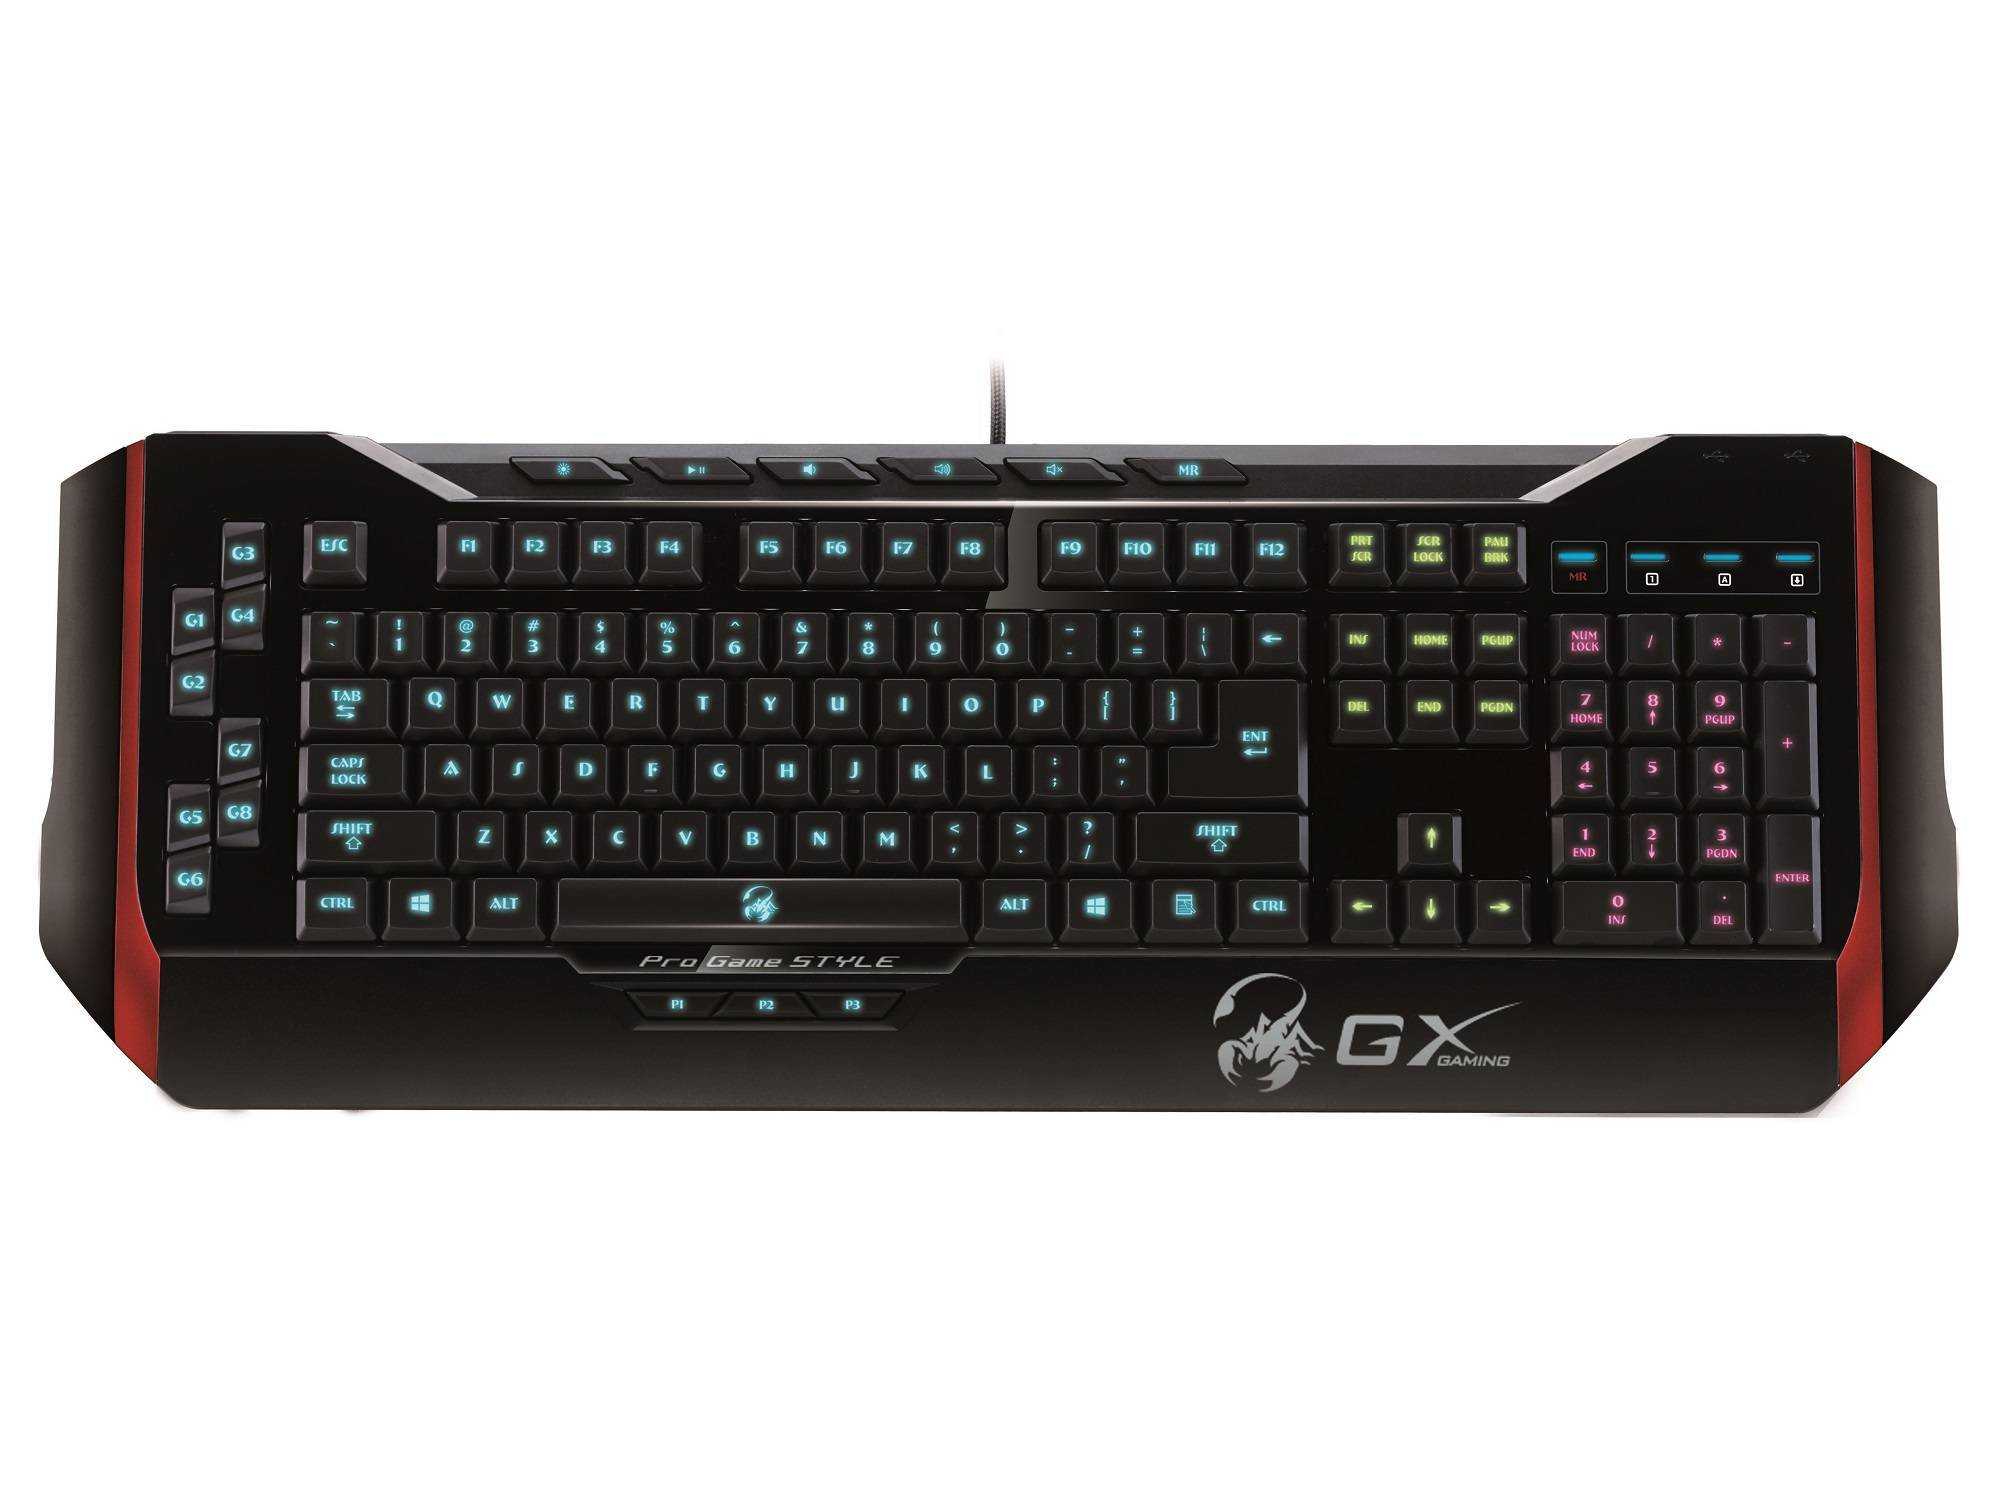 Клавиатура genius gx gaming manticore черный (31310058102) купить от 1279 руб в ростове-на-дону, сравнить цены, отзывы, видео обзоры и характеристики